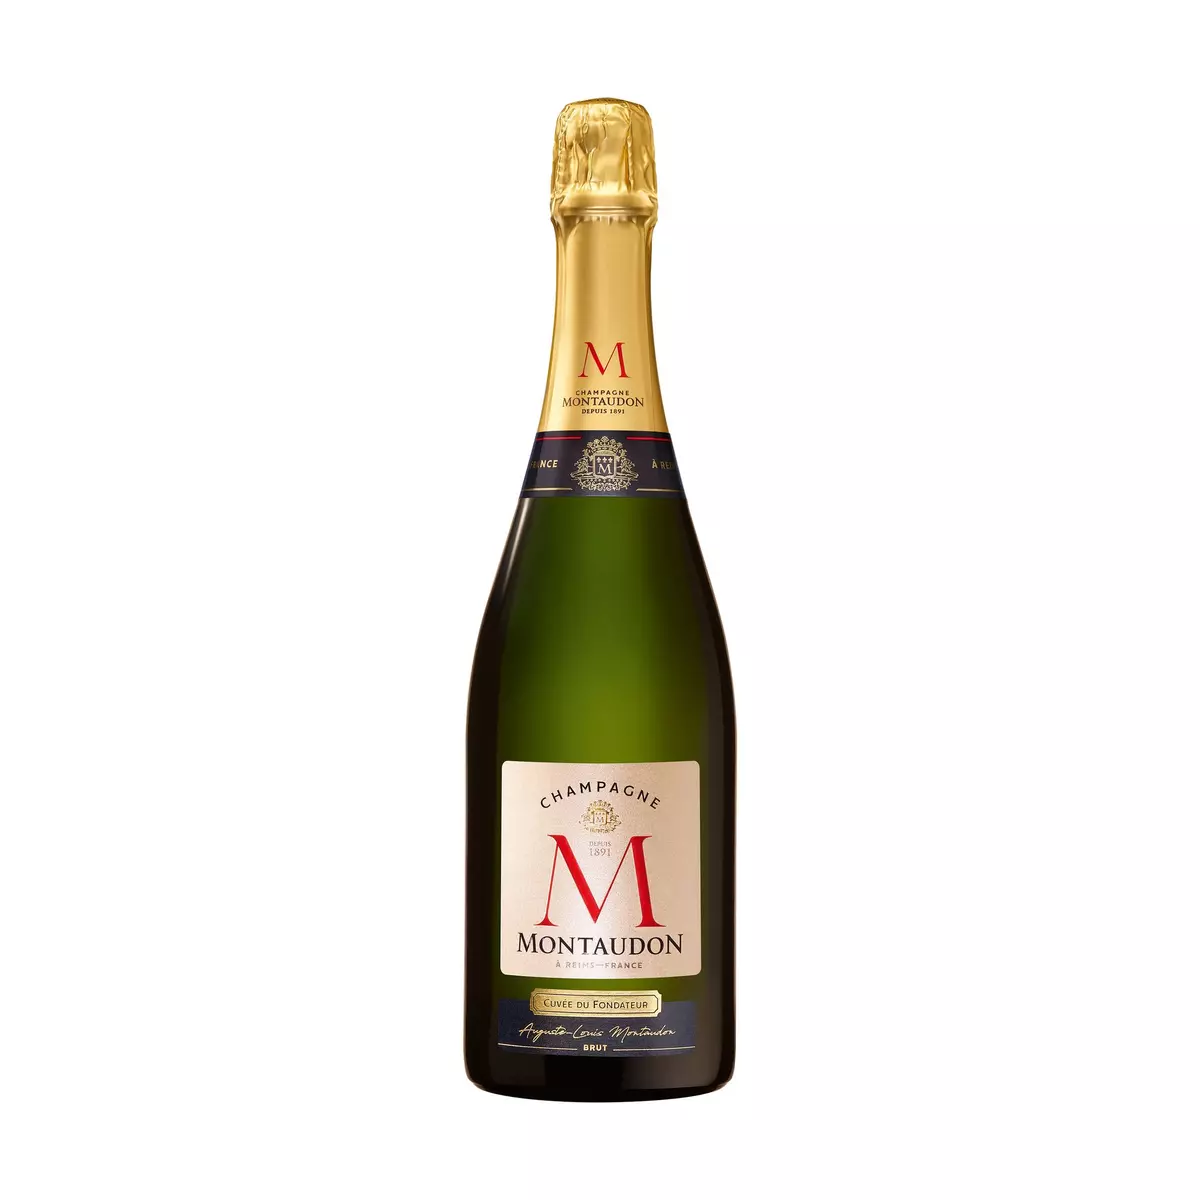 MONTAUDON AOP Champagne brut cuvée du fondateur 75cl